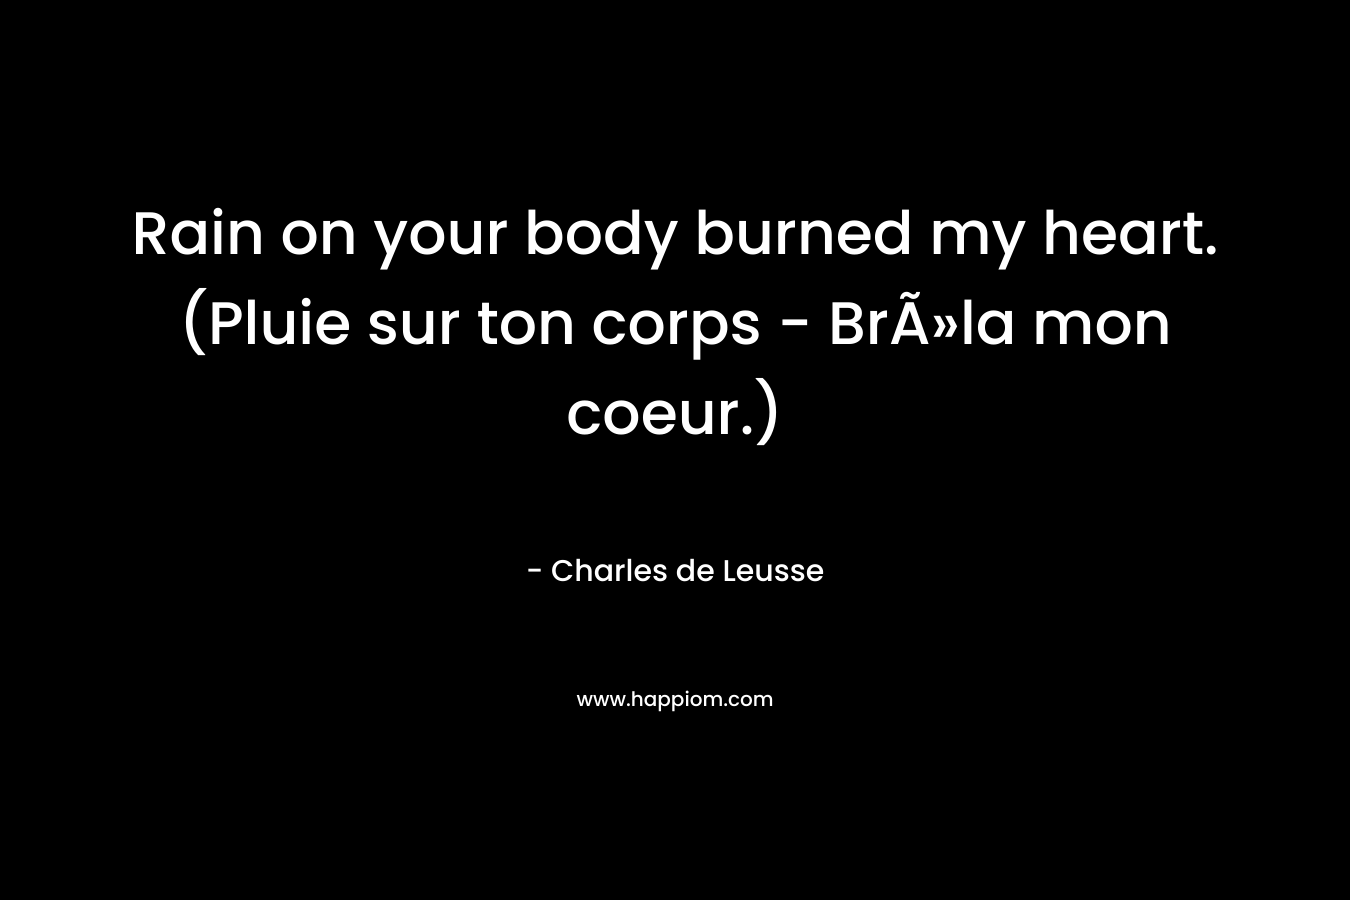 Rain on your body burned my heart. (Pluie sur ton corps - BrÃ»la mon coeur.)